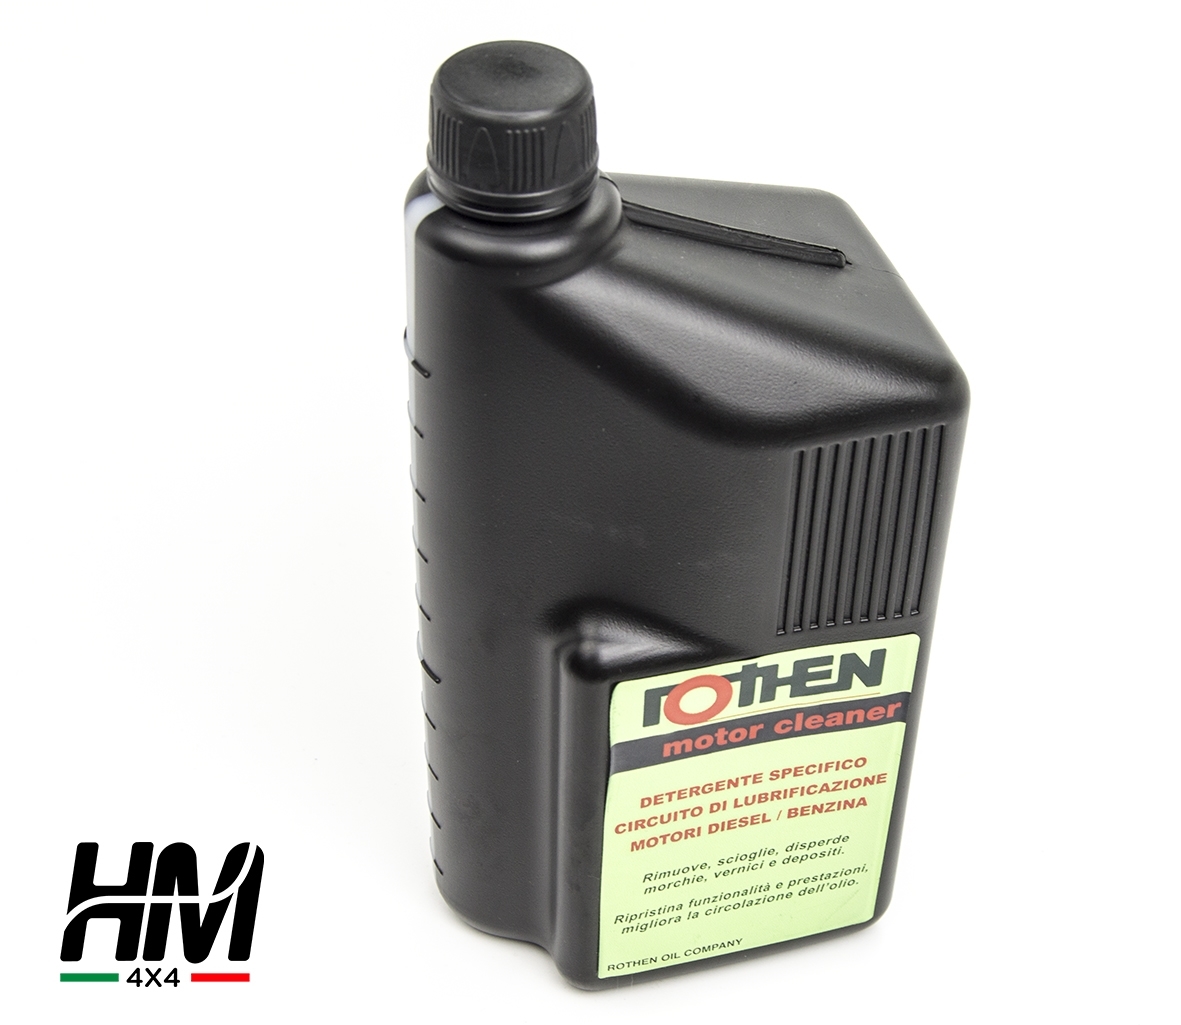 Rothen motor cleaner - detergent pour circuit de lubrification - KAYMAN  OFFROAD